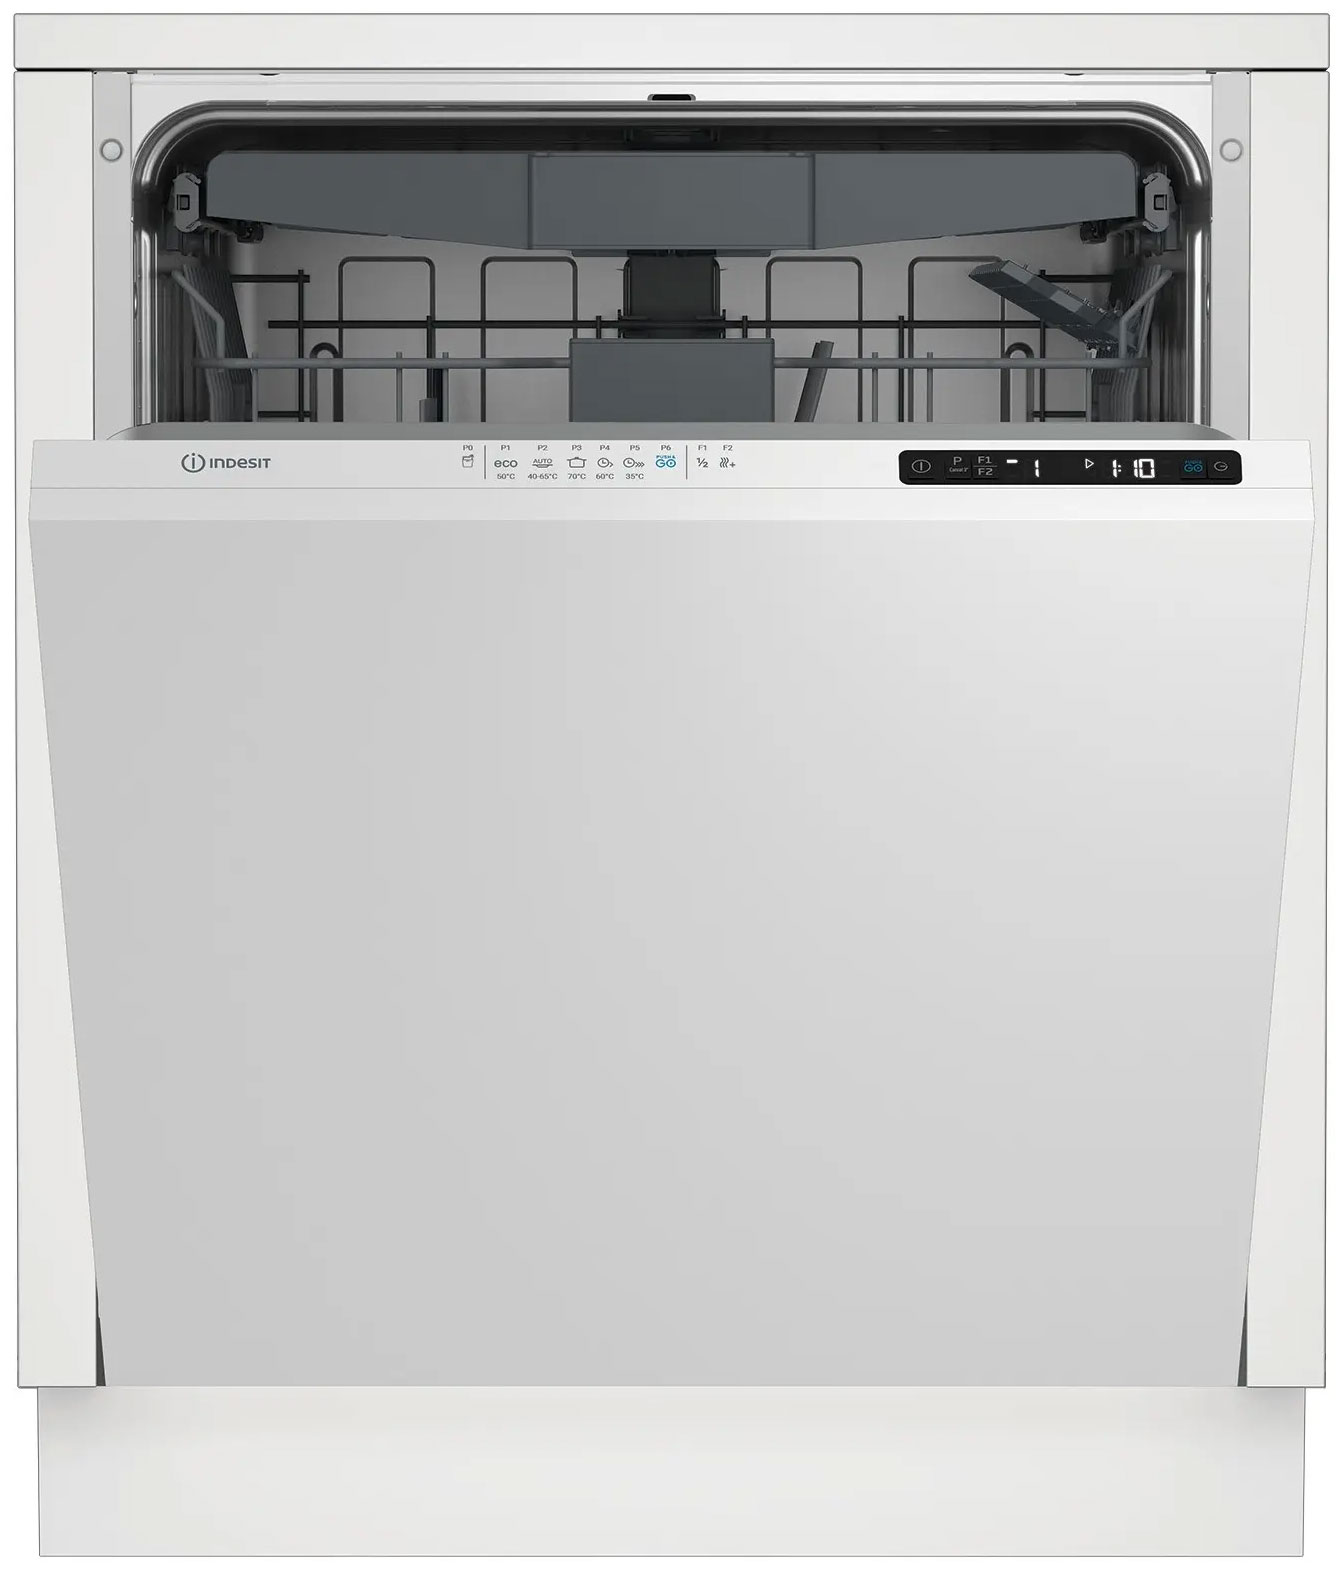 Встраиваемая посудомоечная машина Indesit DI 5C65 AED встраиваемая посудомоечная машина indesit di 4c68 ae